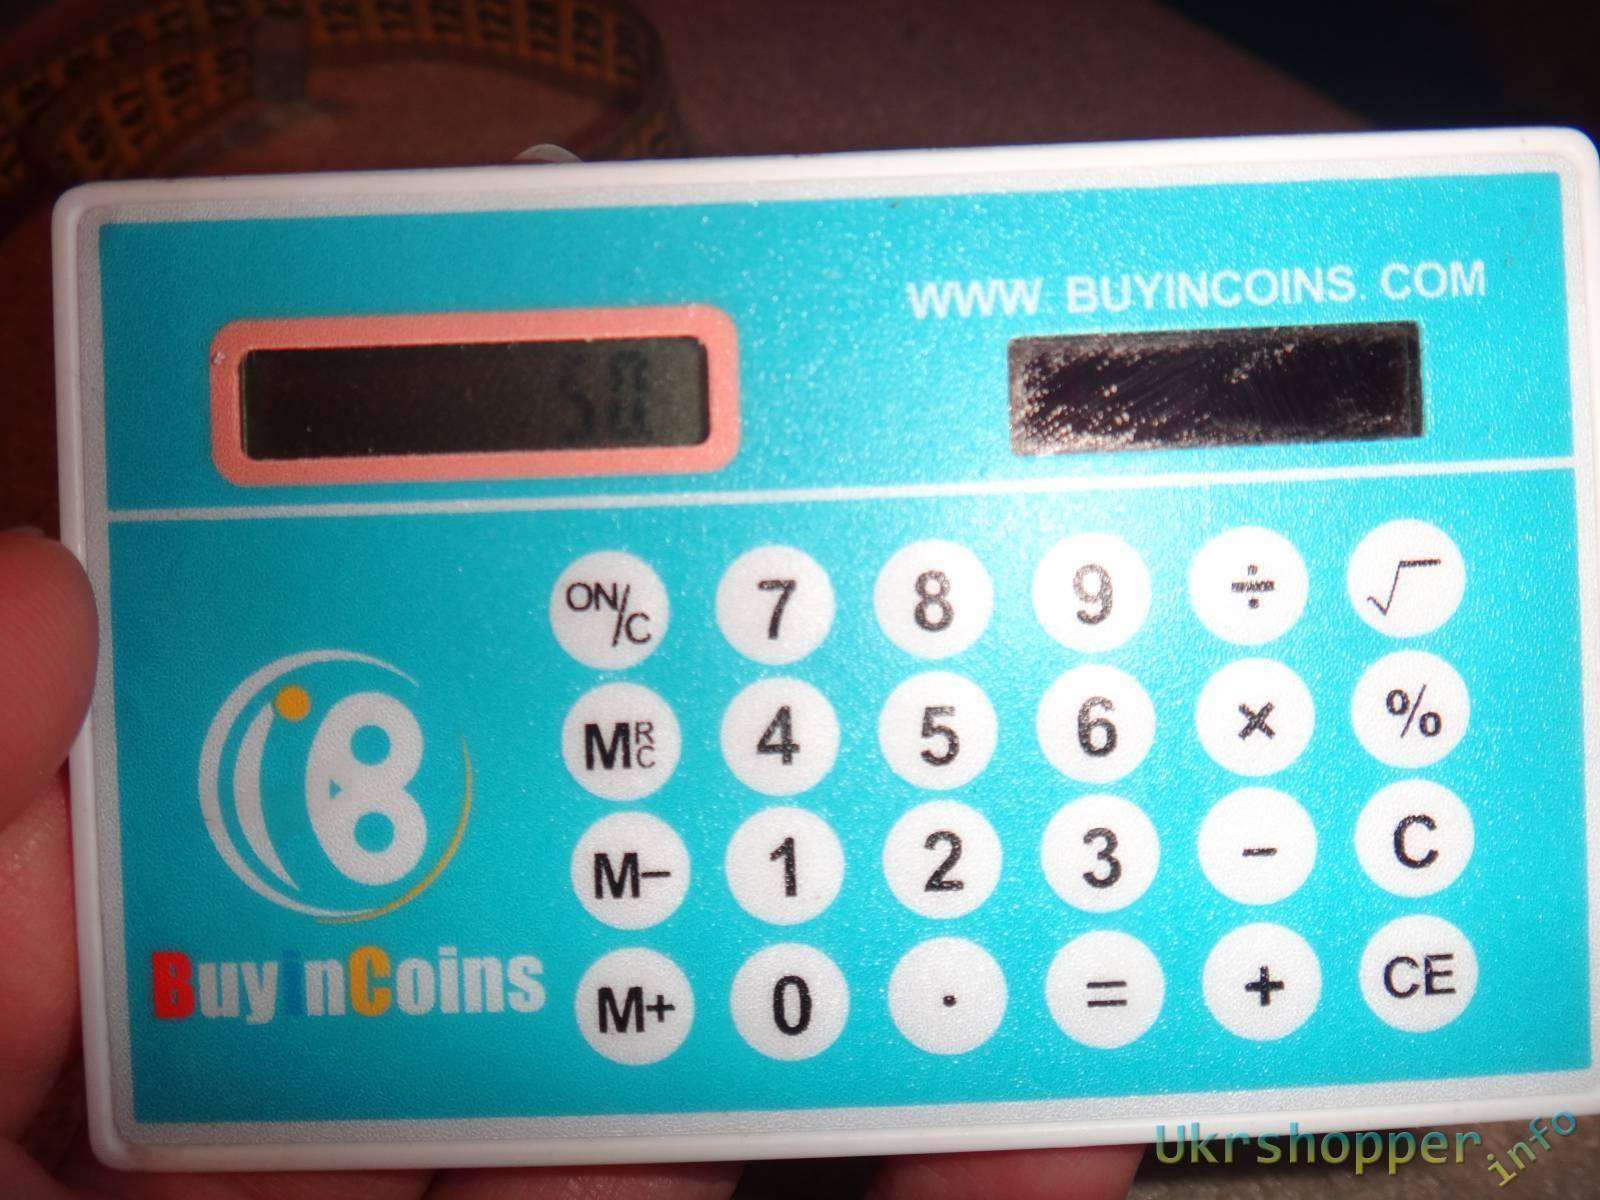 BuyinCoins: Обзор подарочного калькулятора с buyincoins на солнечной батарее